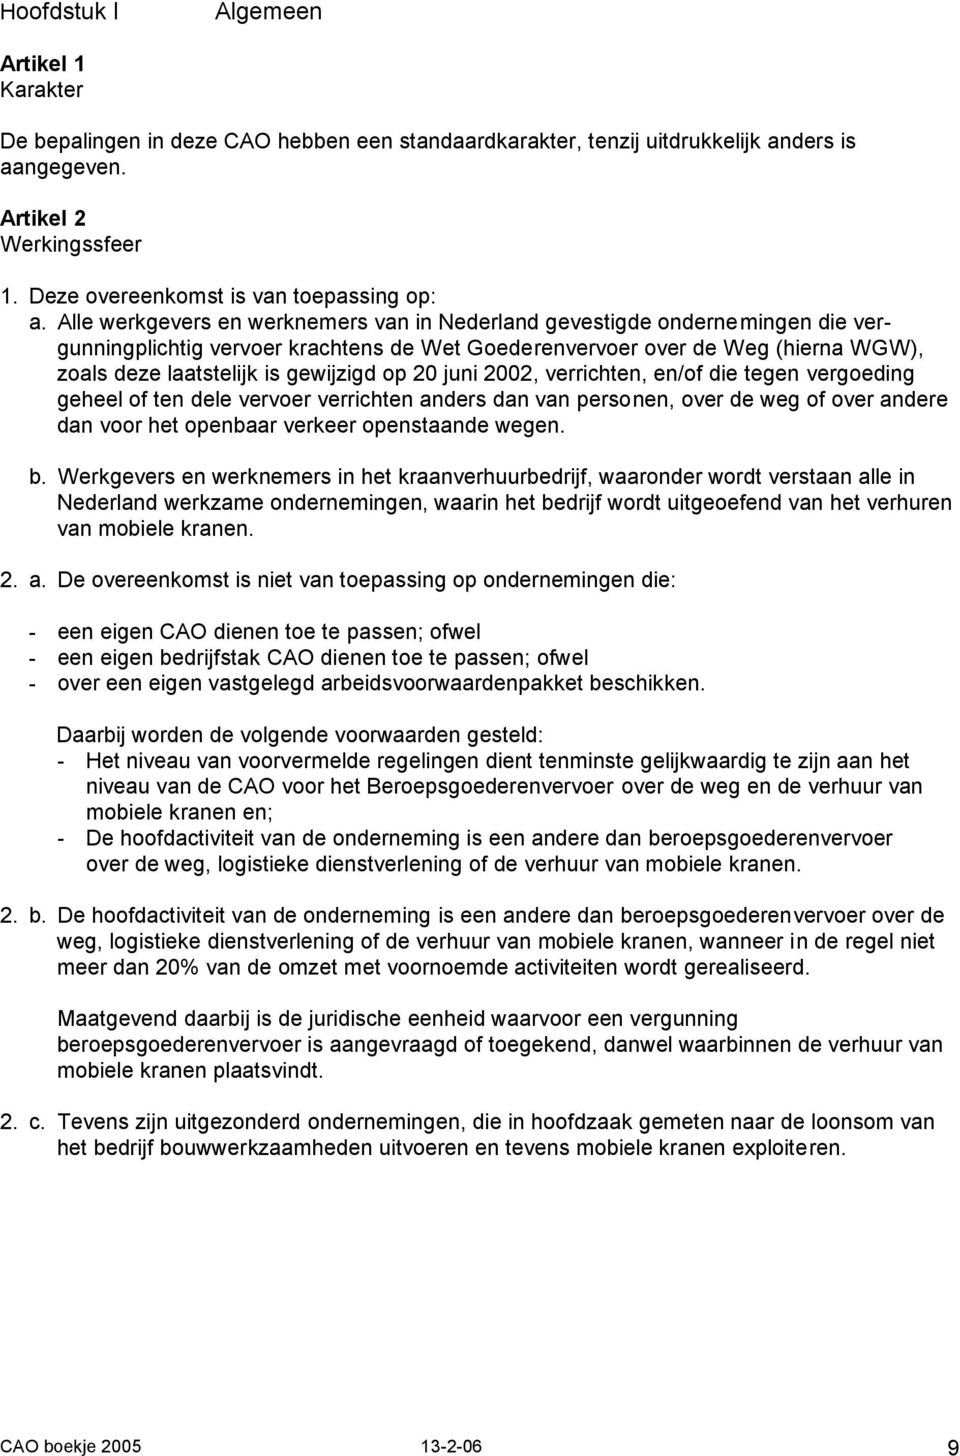 Alle werkgevers en werknemers van in Nederland gevestigde ondernemingen die vergunningplichtig vervoer krachtens de Wet Goederenvervoer over de Weg (hierna WGW), zoals deze laatstelijk is gewijzigd